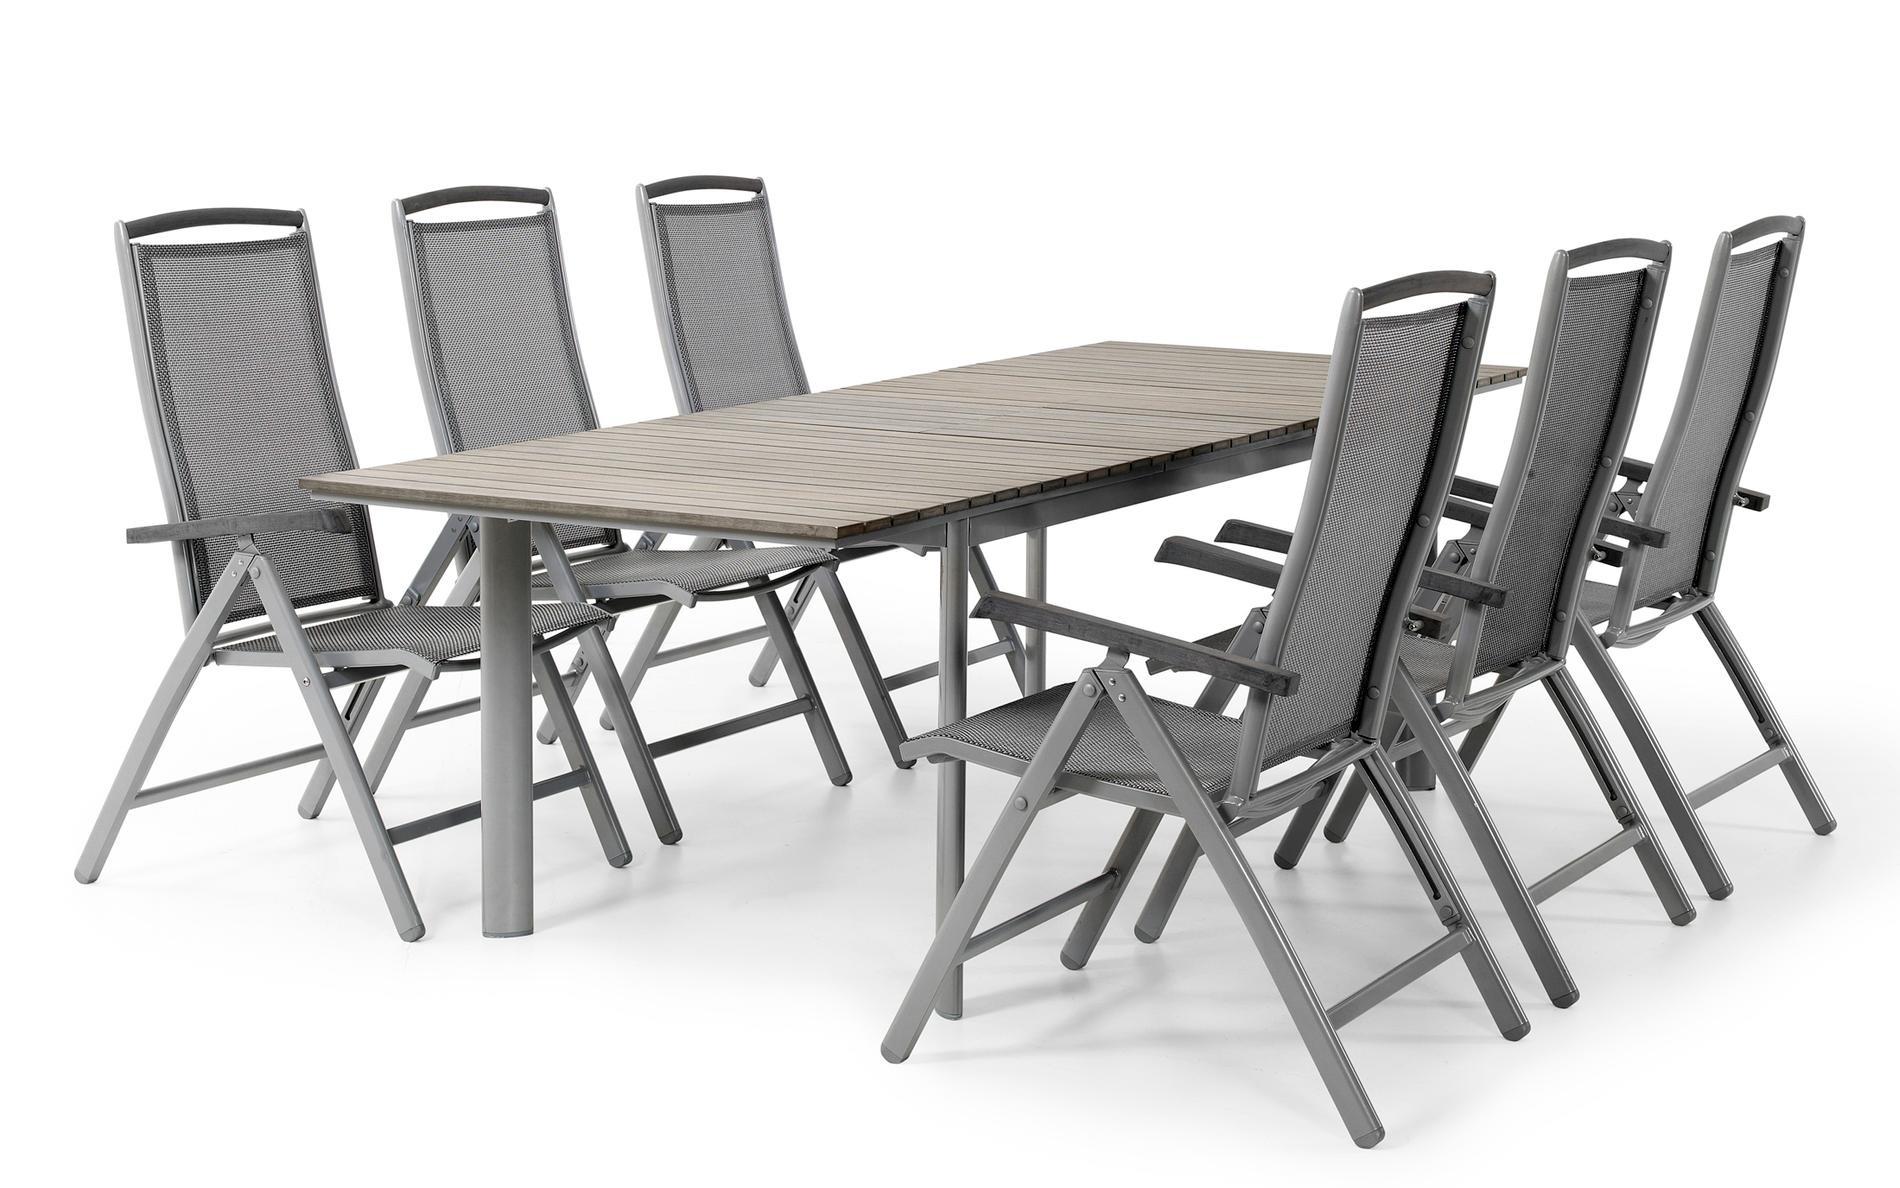 Perfekt matbord när grillsäsongen börjar. Positionsstolar ”Andy” i aluminium, cirka 925 kr styck. Förlängbara bordet ”Tripoli”, 5 295 kr, Brafab.